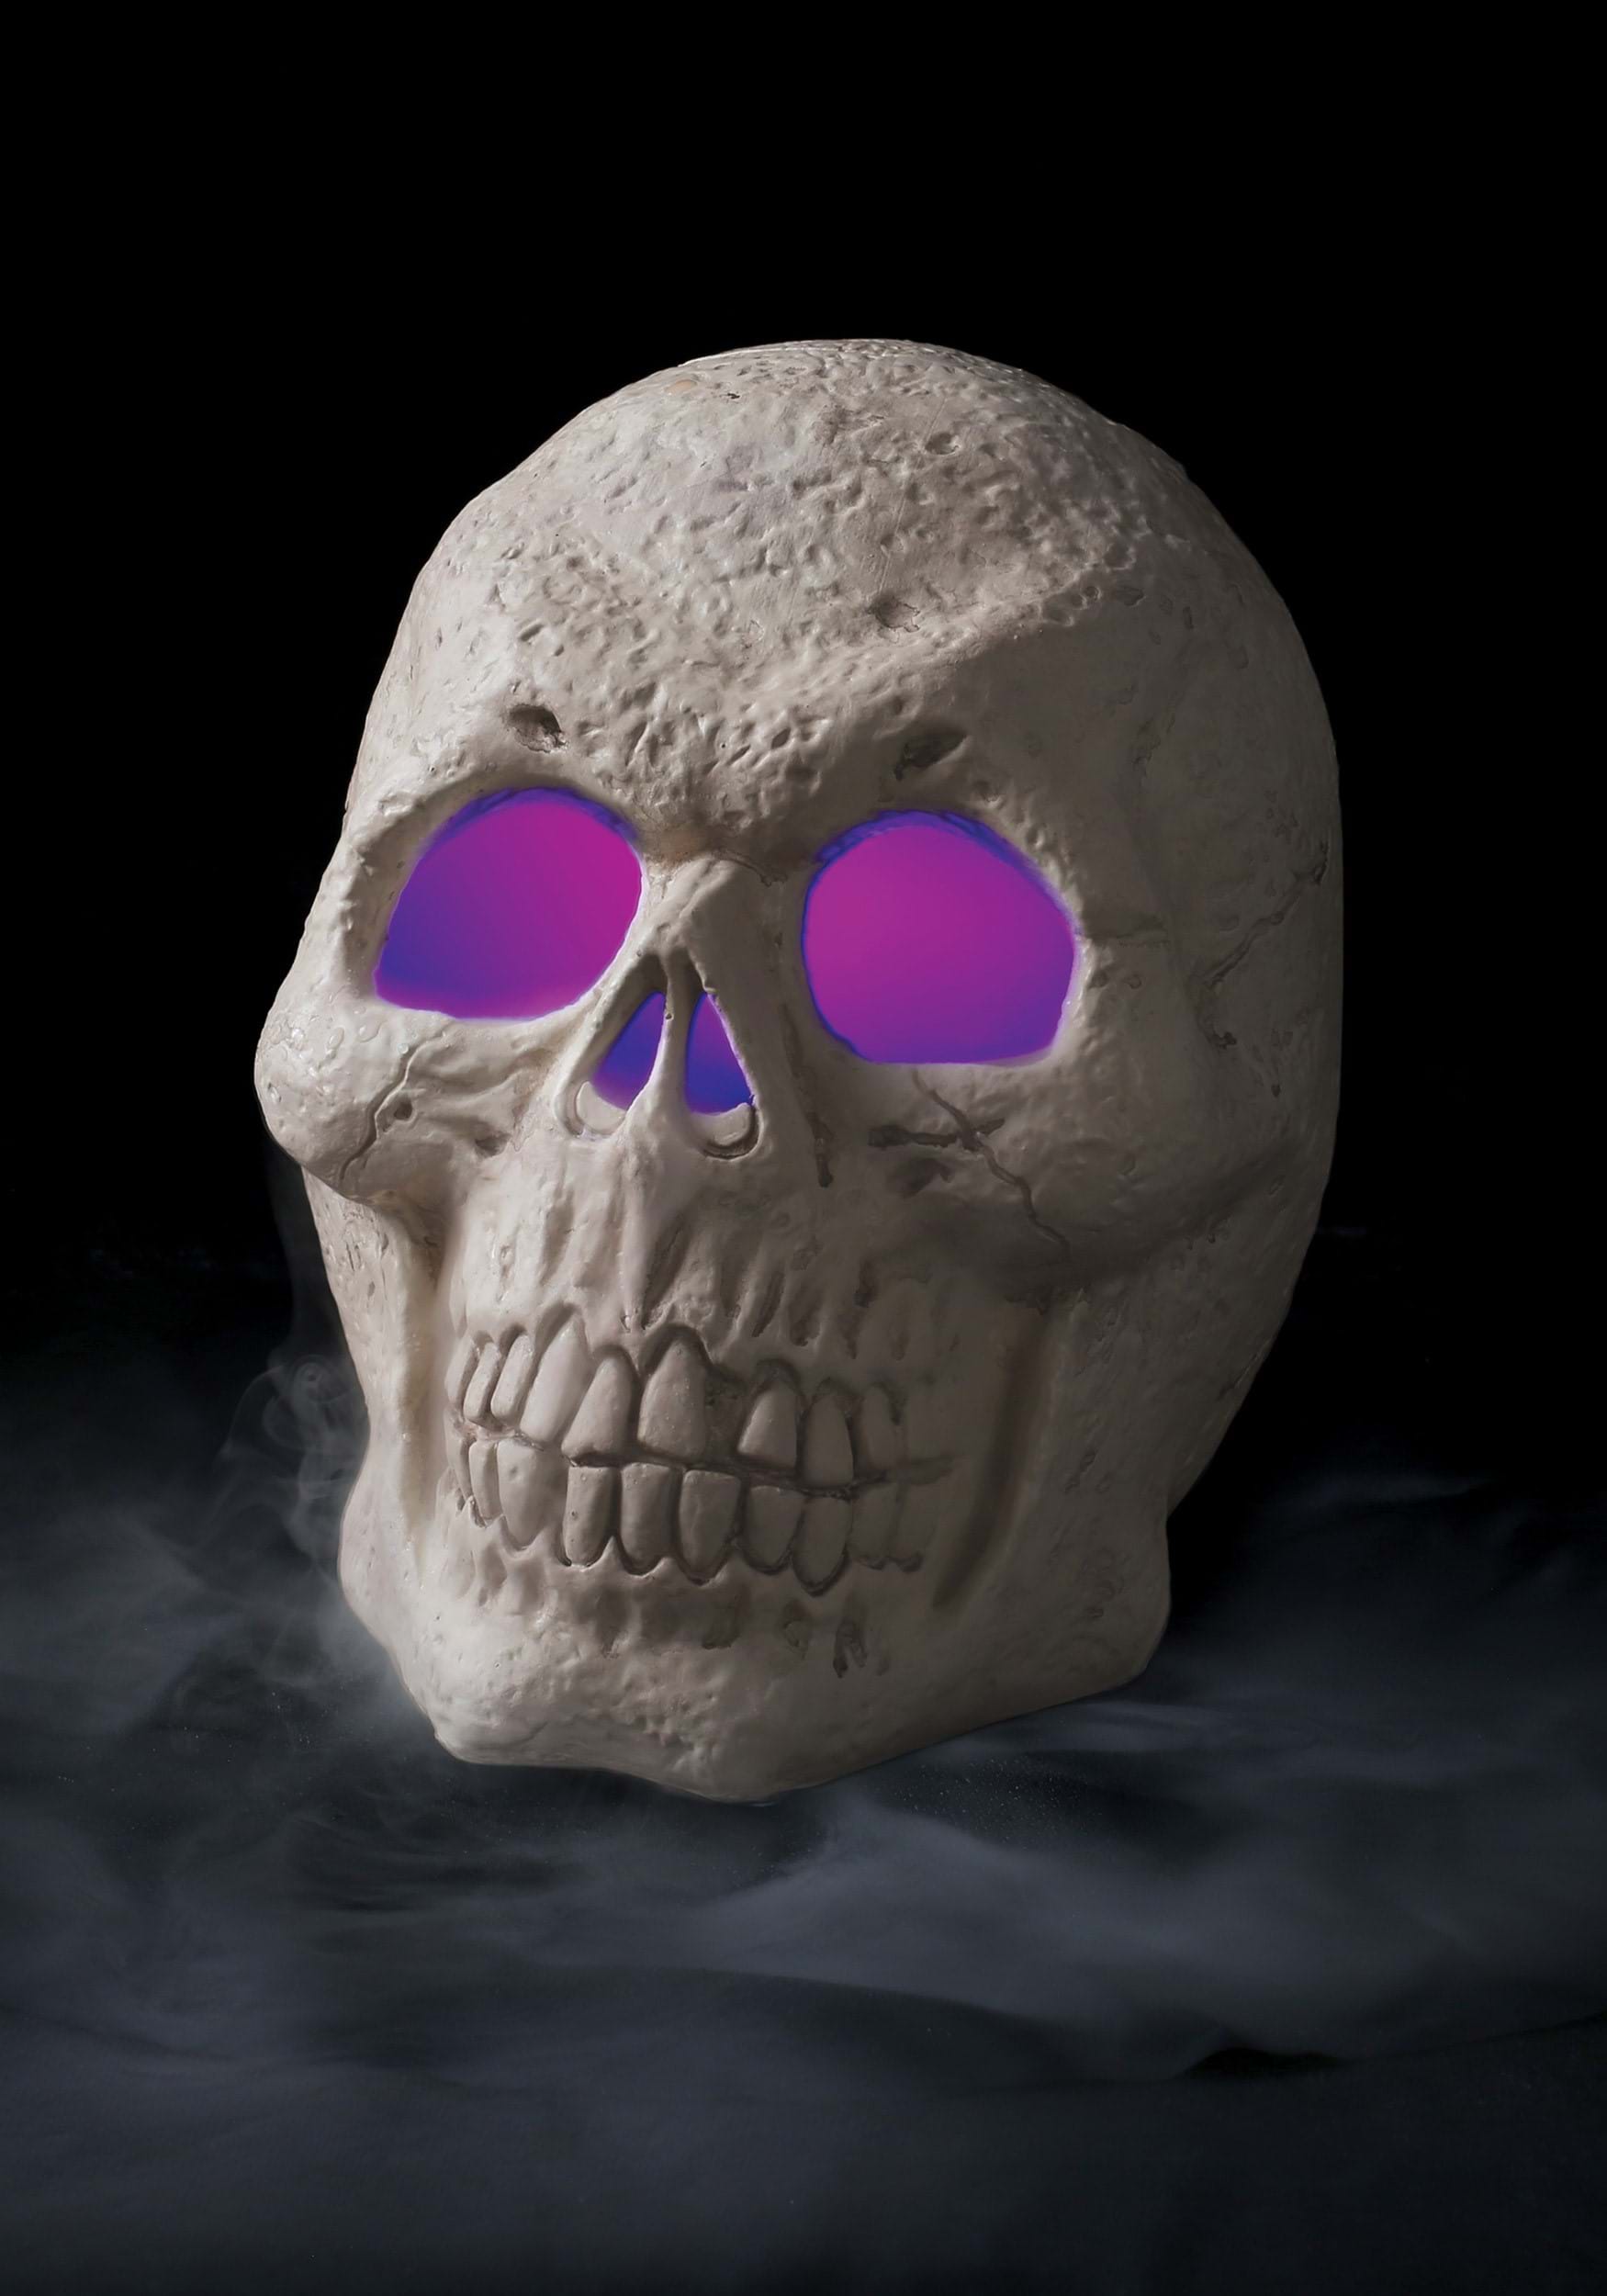 Misting Skull Halloween Prop